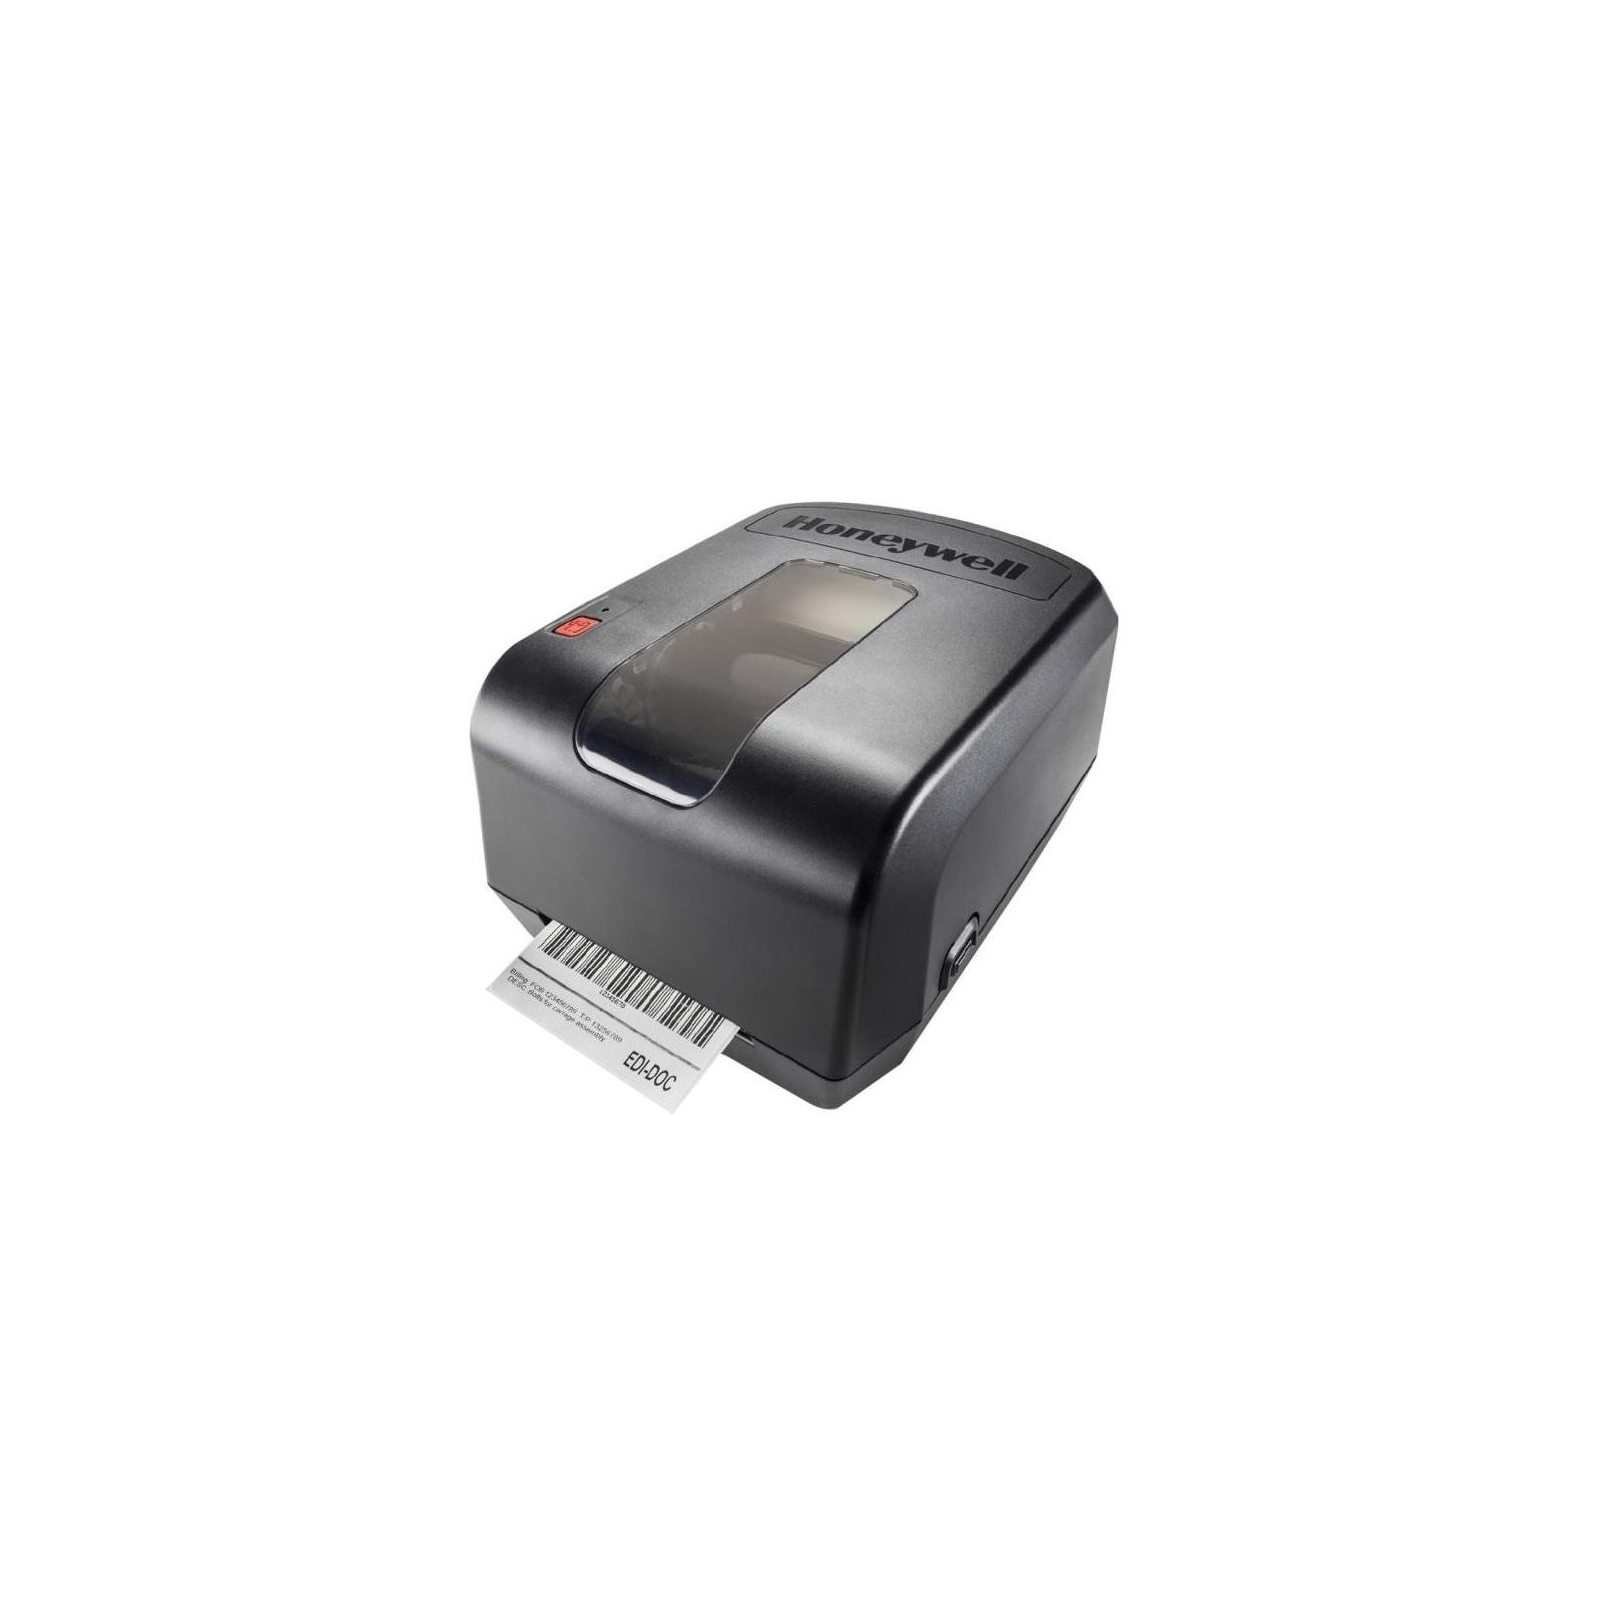 Принтер этикеток Honeywell PC42t USB (PC42TWE01013)